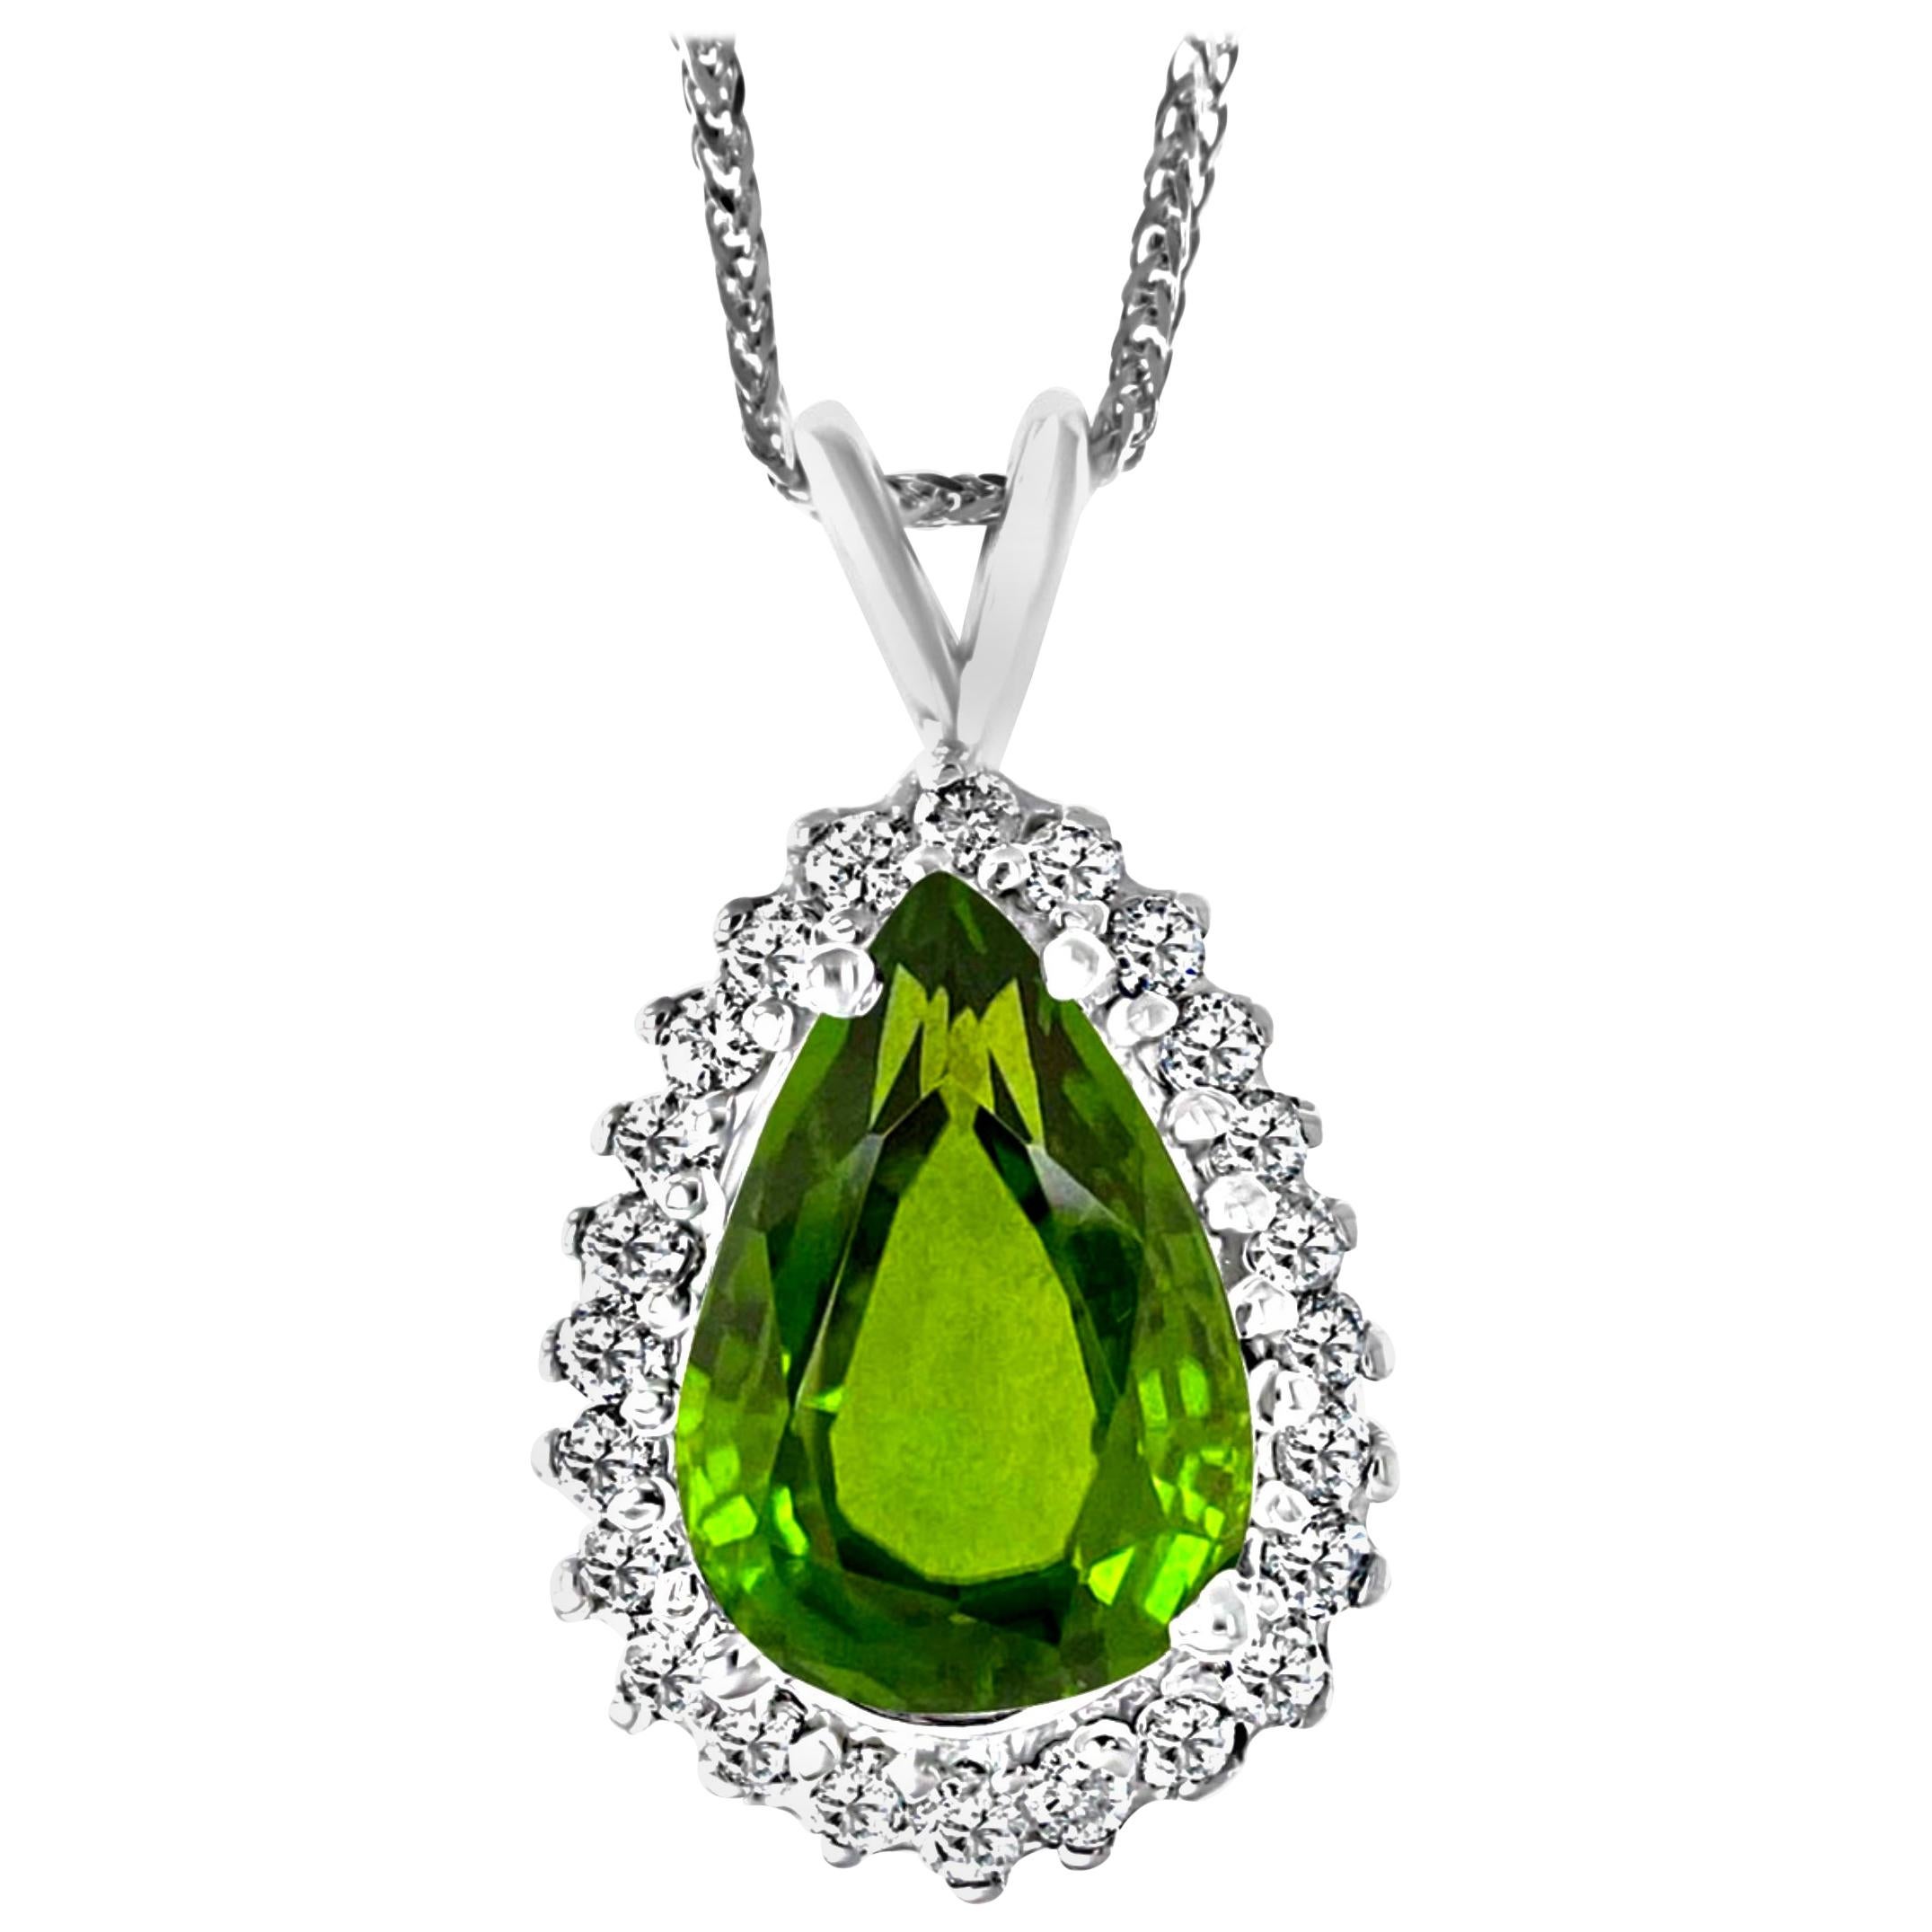 8 Carat Green Tourmaline and 1.5 Carat Diamond Pendant or Necklace 14 Karat Gold